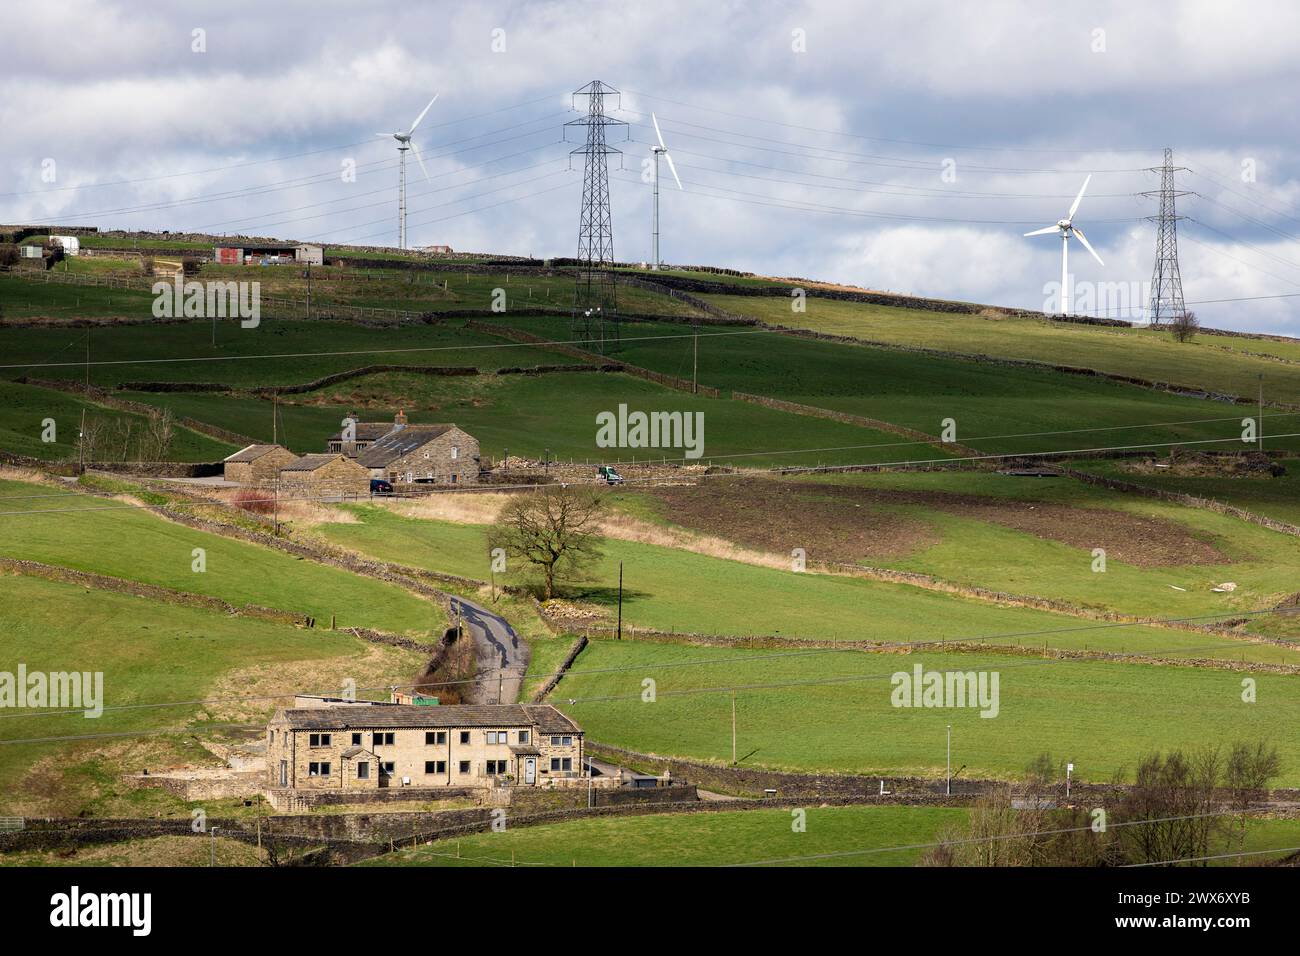 Windmühlen und Pylonen dominieren die Landschaft von Pennine und Moore über und um Farmen und Häuser in der Nähe von Queensbury und den Pennine Moors, die von den Bronte Schwestern berühmt wurden. Stockfoto